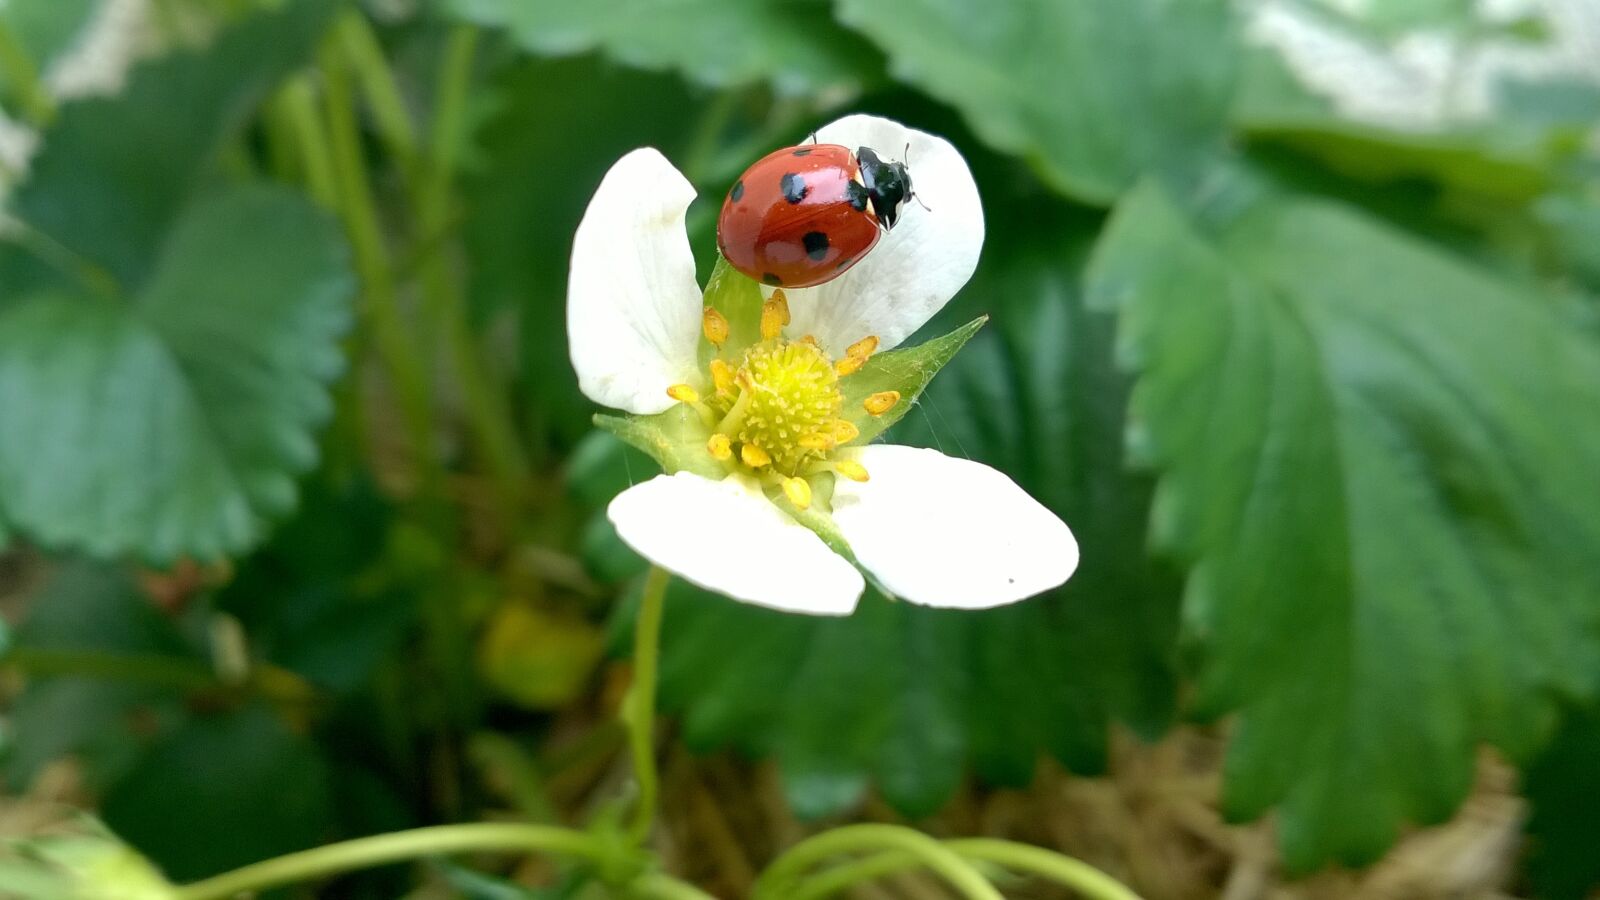 Nokia Lumia 735 sample photo. Ladybug, strawberry, green photography